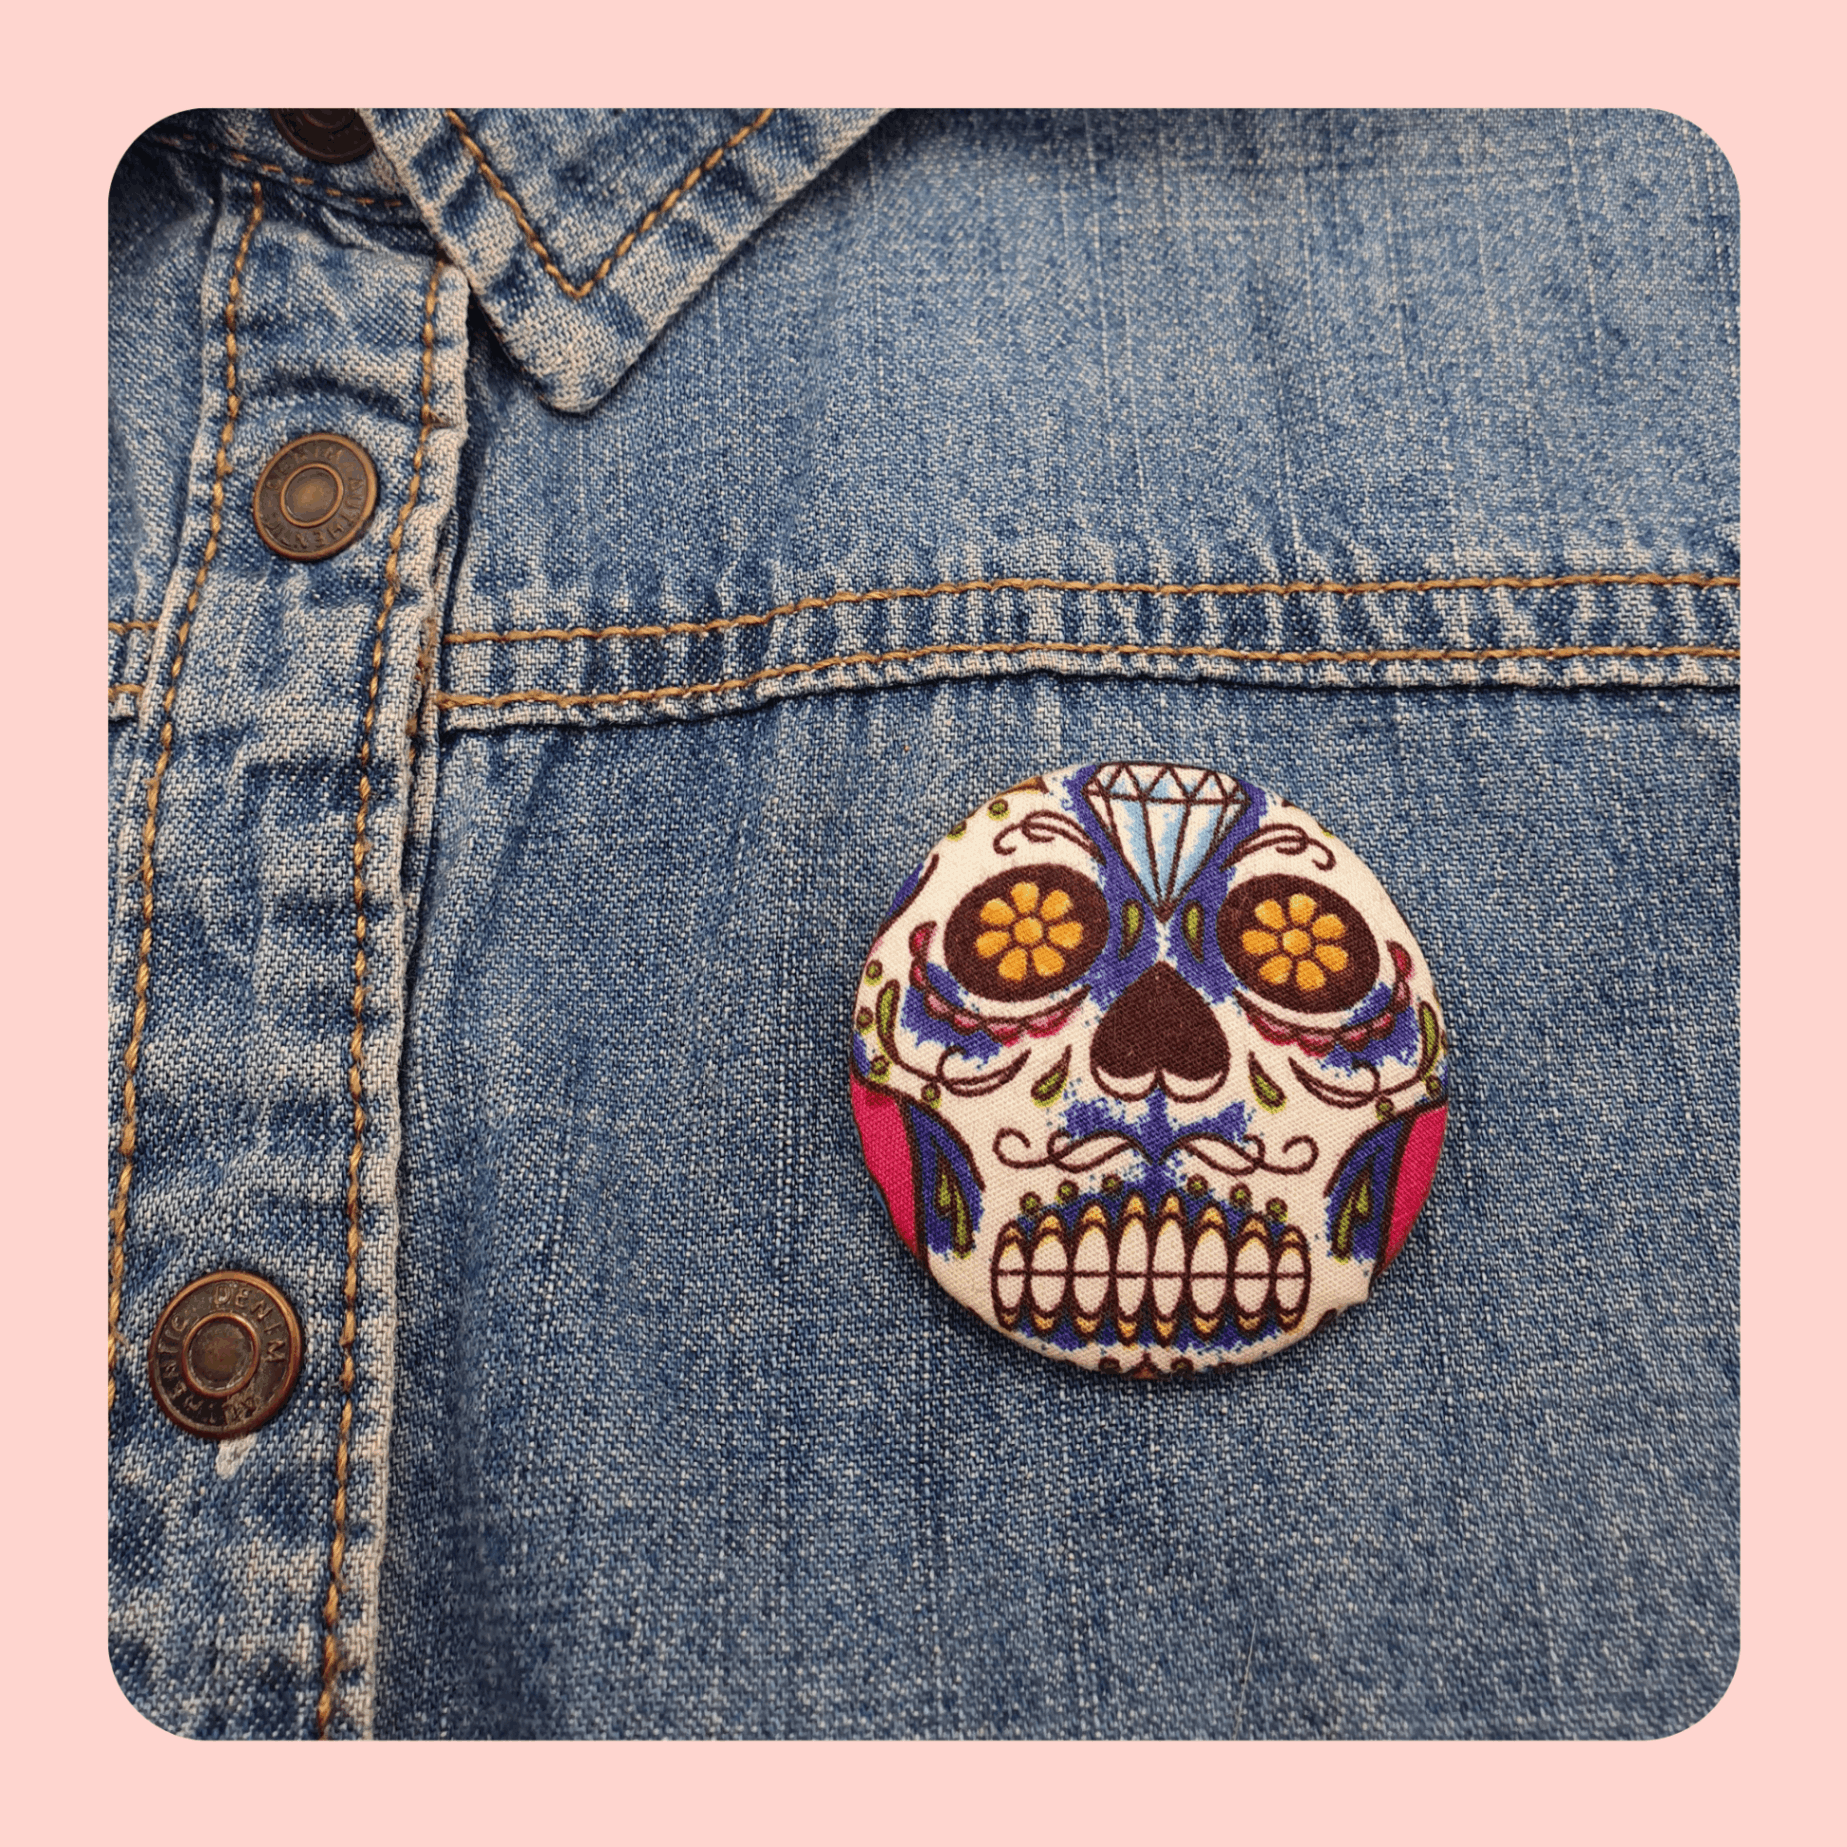 Skull design pin brooch